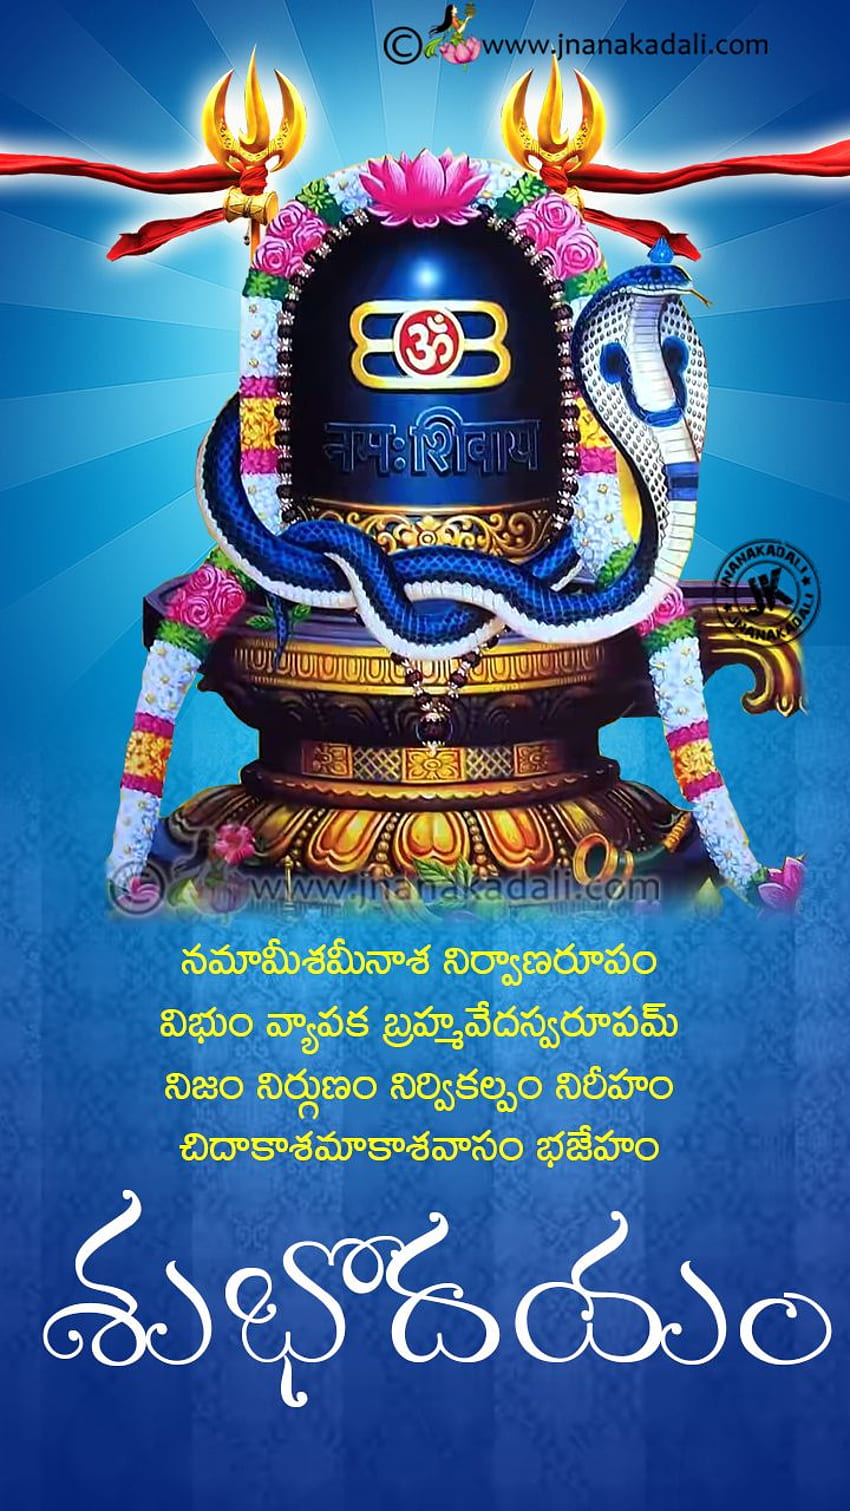 Hindu God Shiva Lingam HD phone wallpaper | Pxfuel